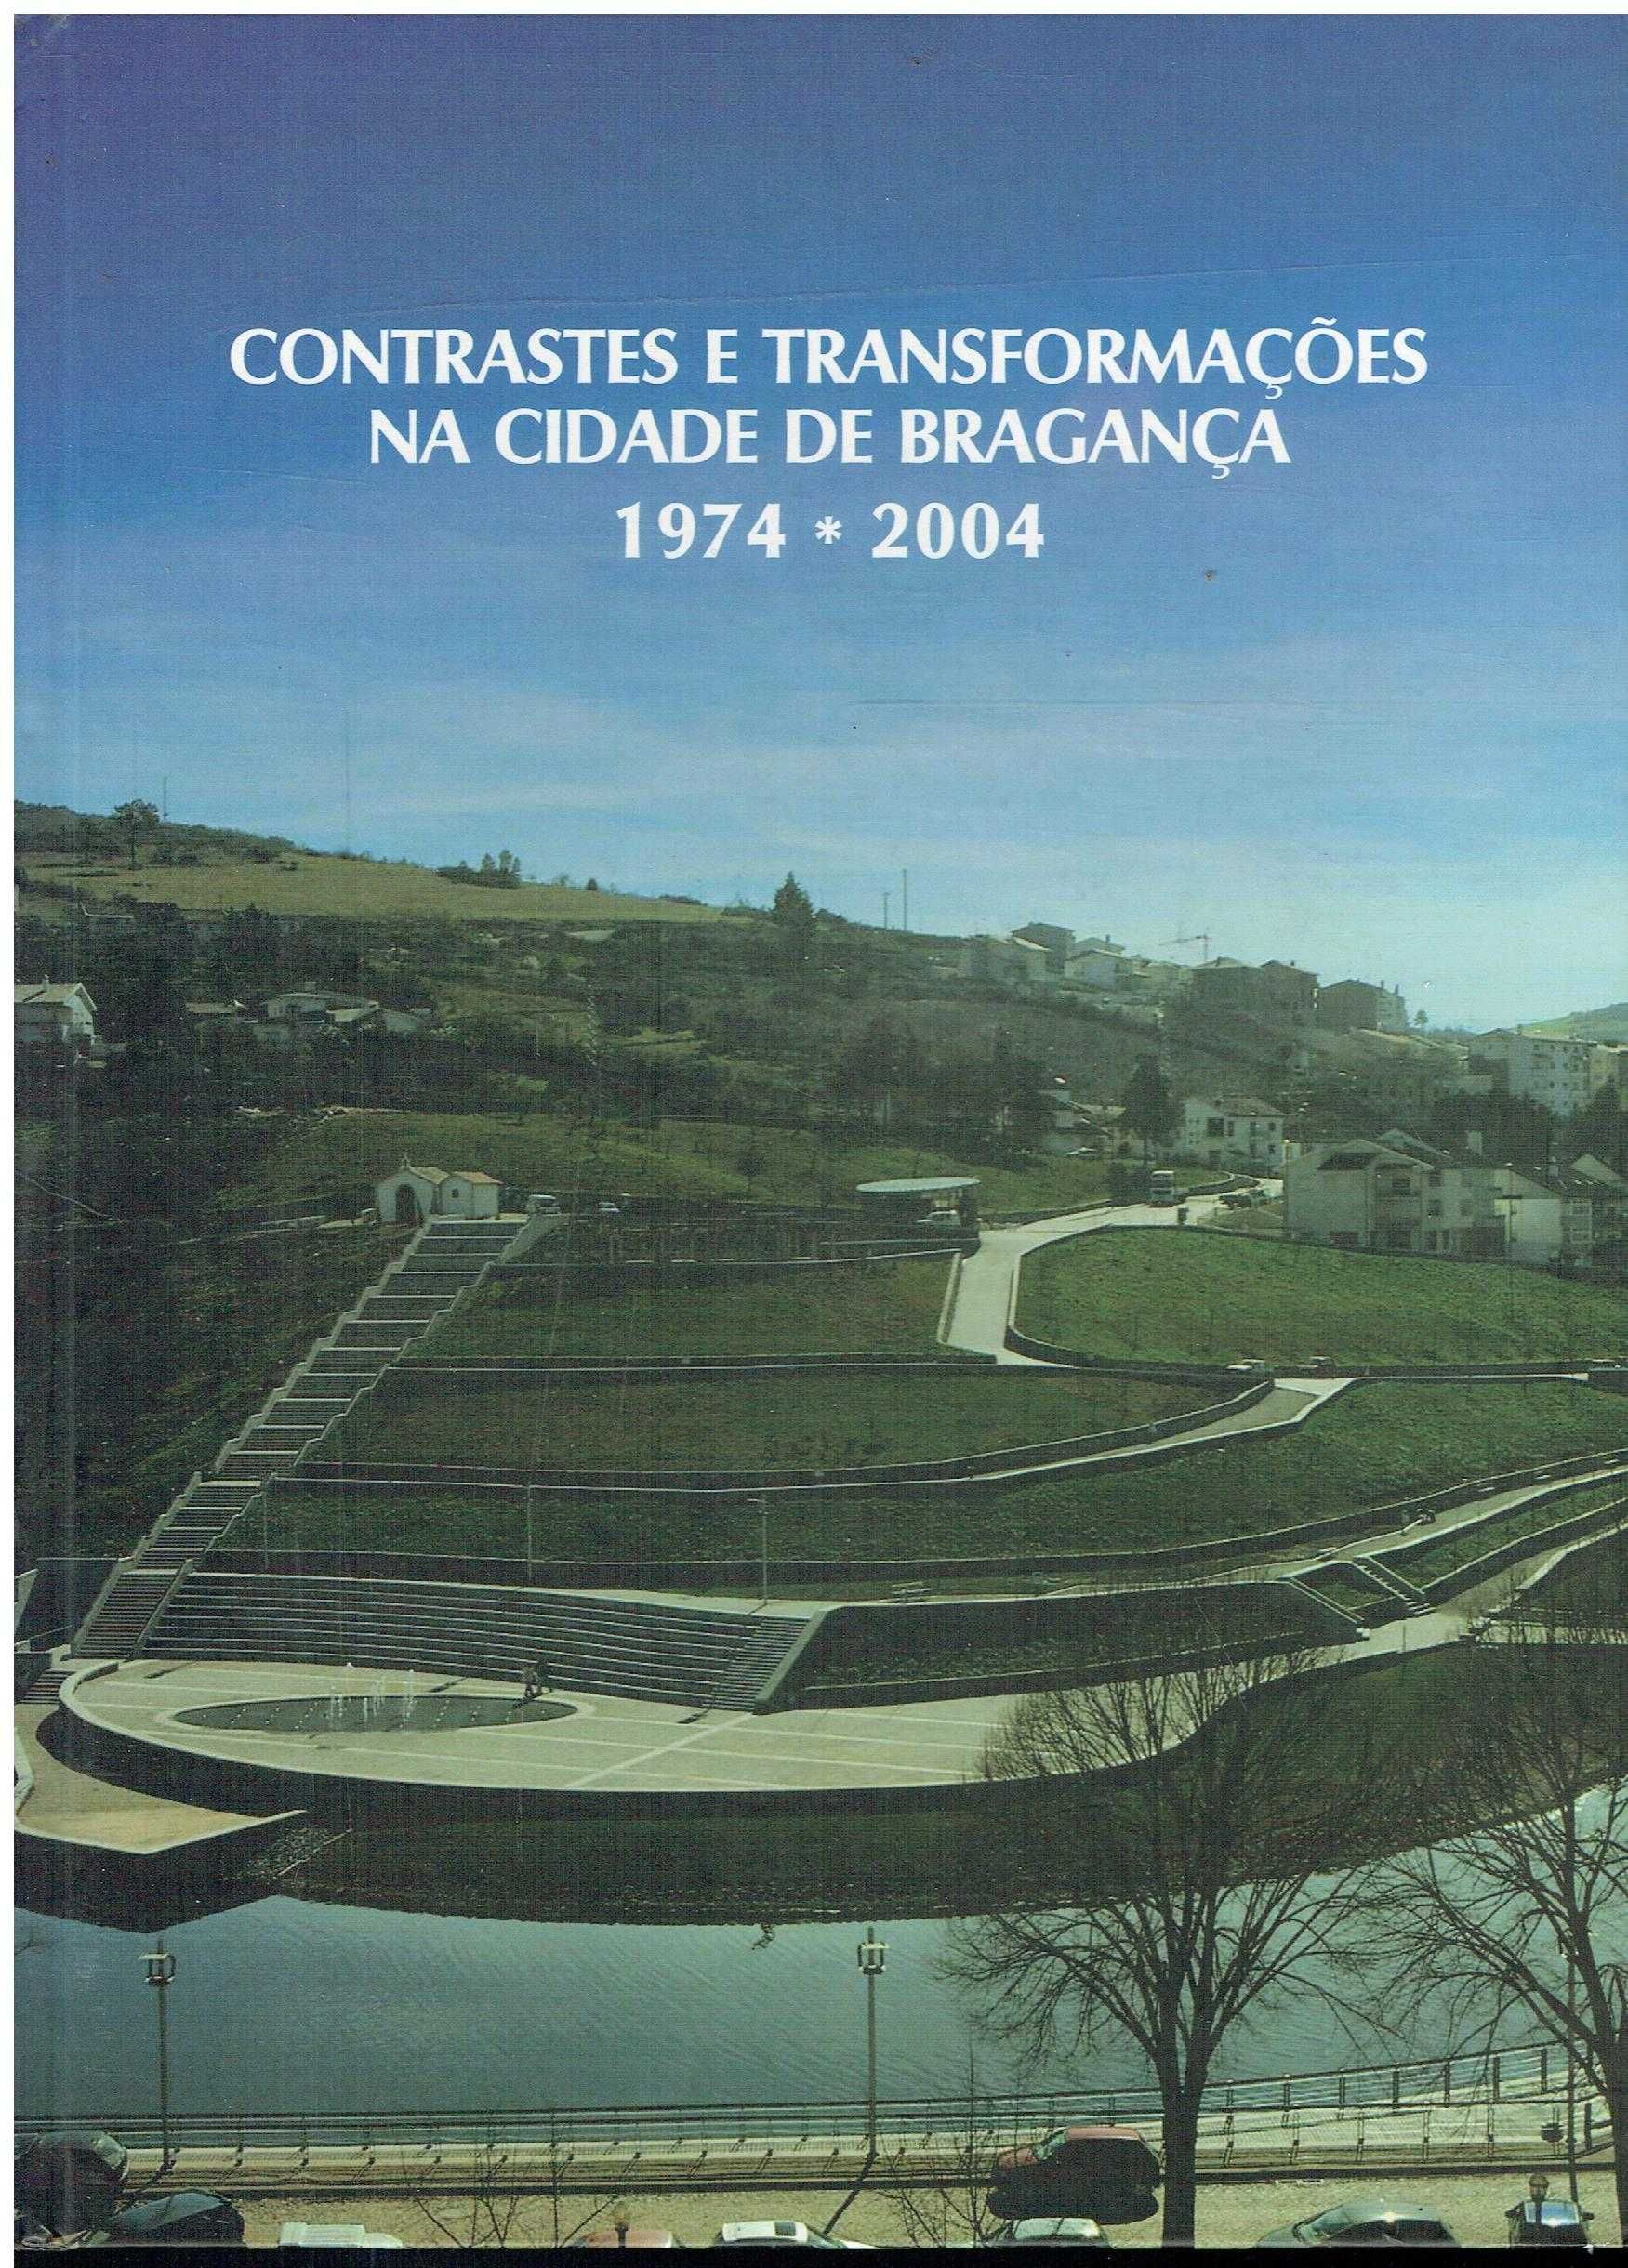 1222
	
Contrastes e transformações na cidade de Bragança, 1974/2004